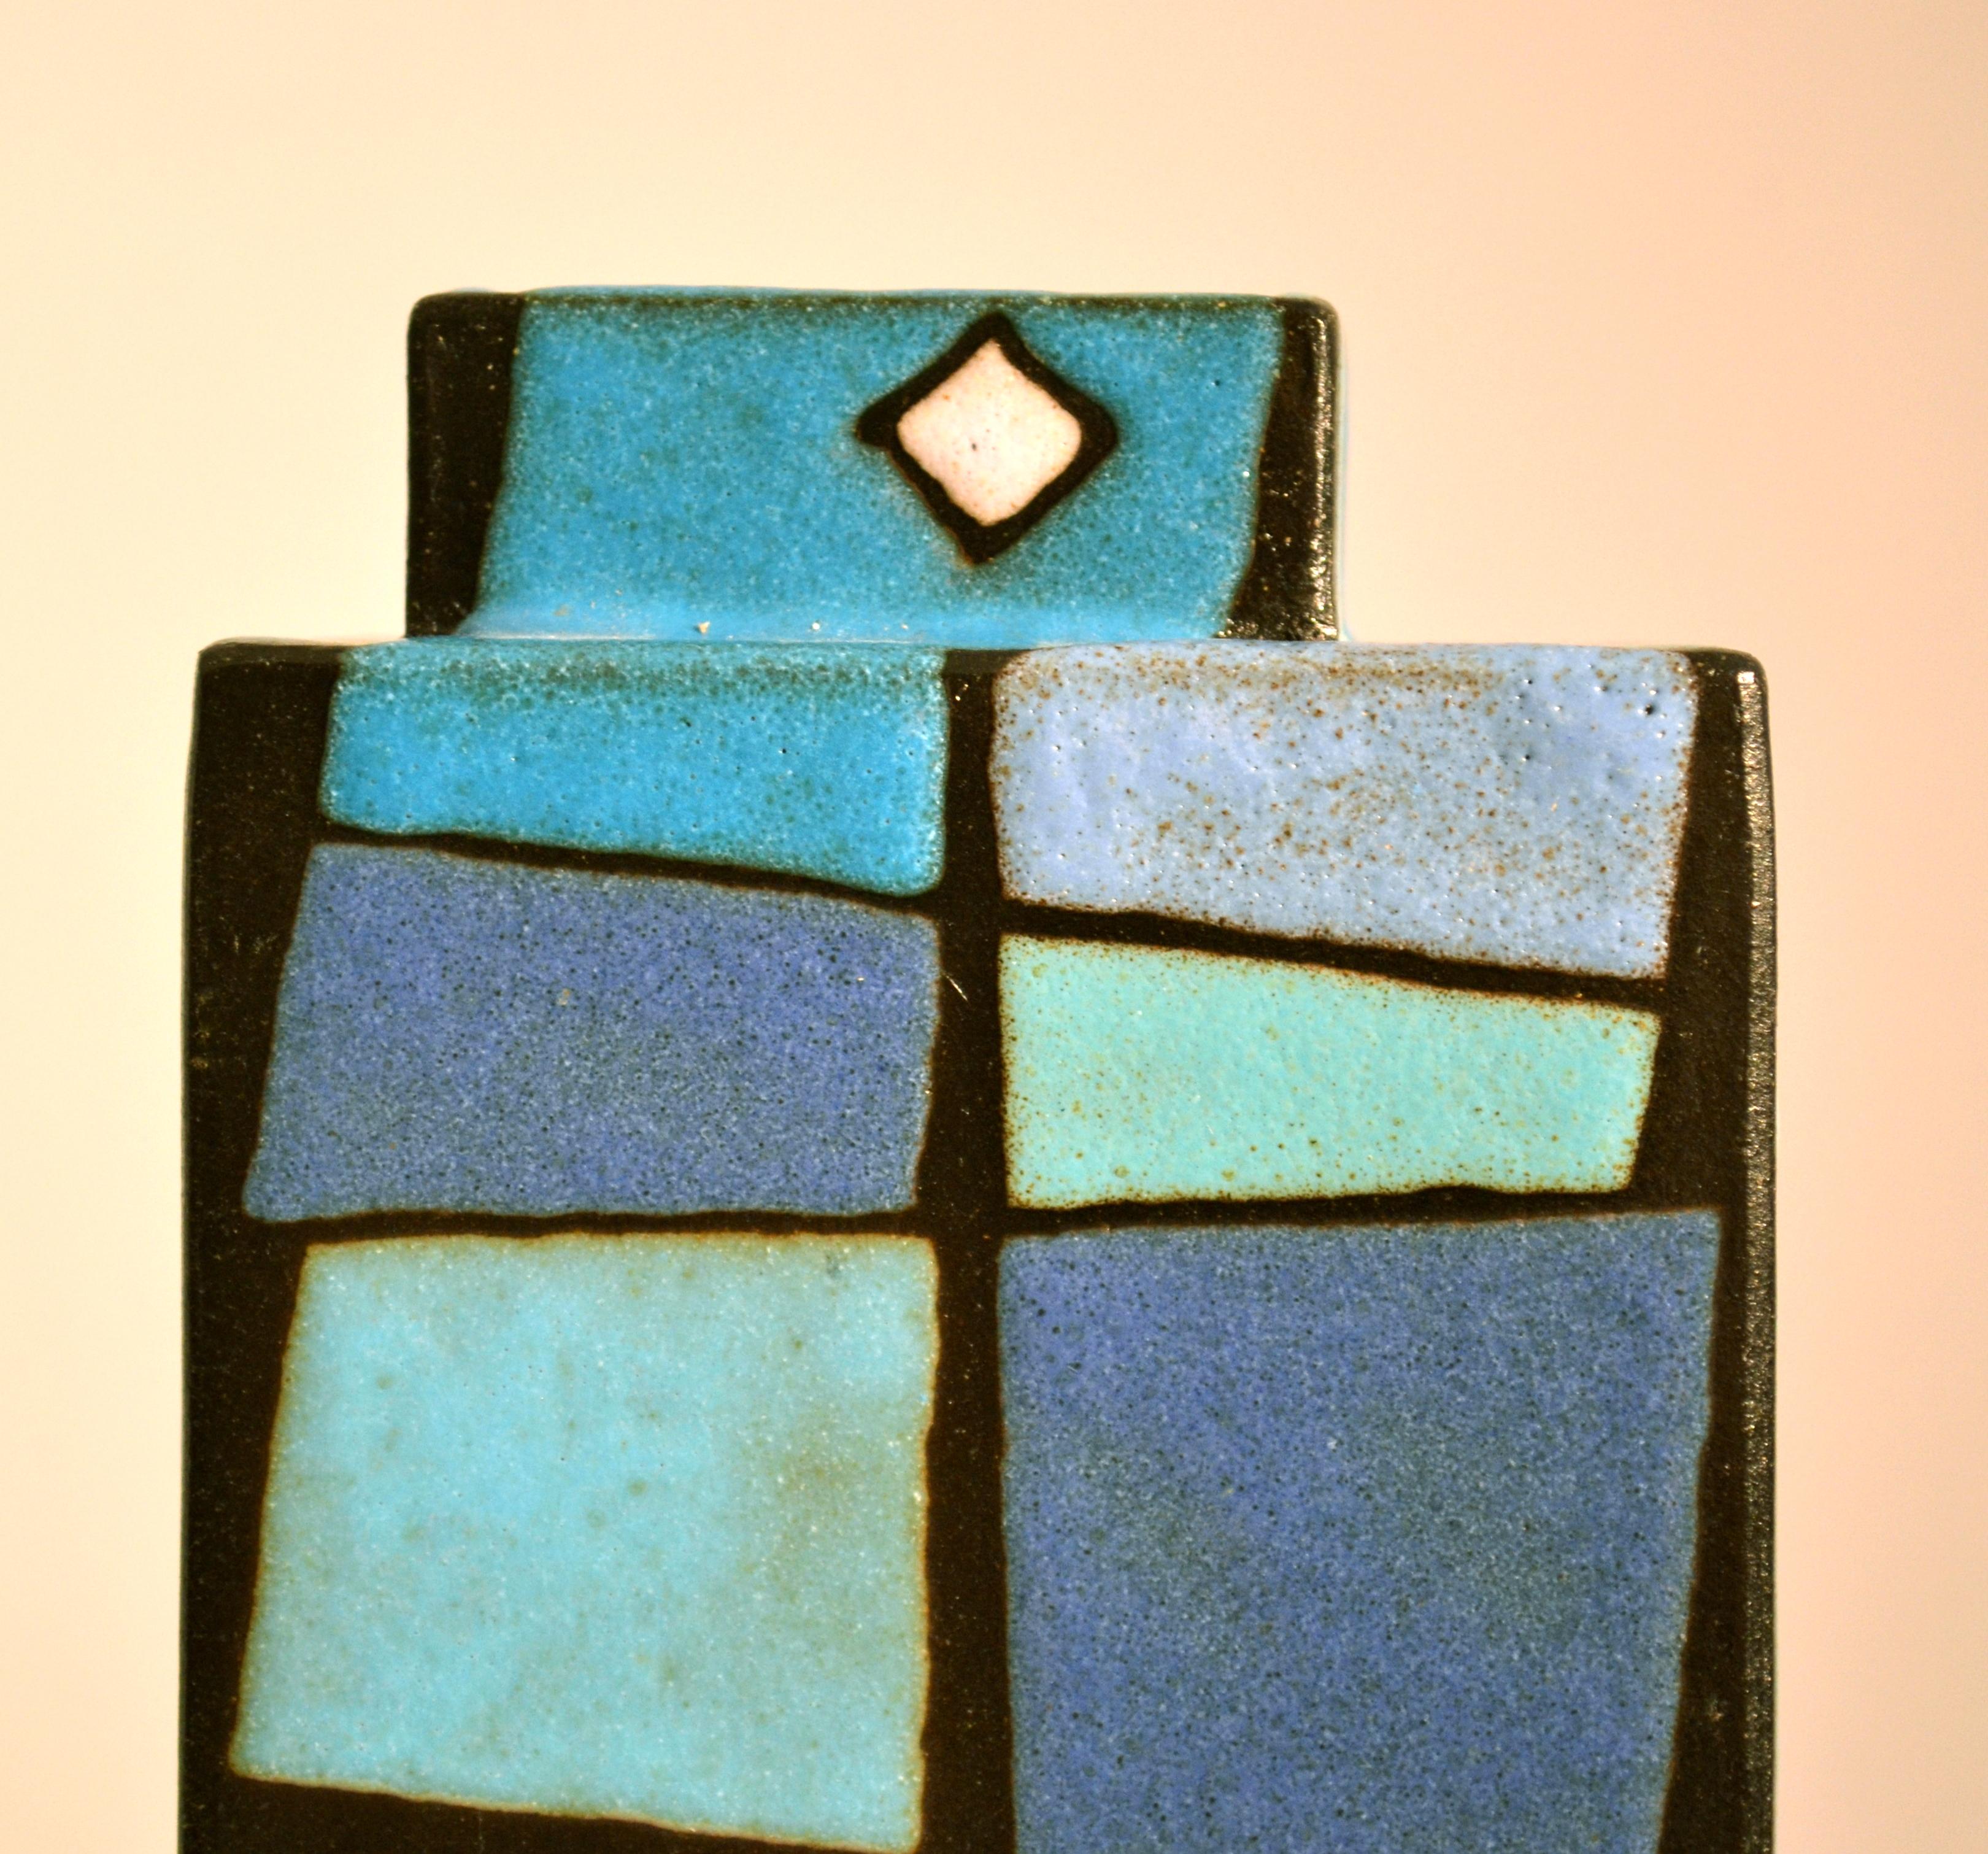 Rechteckige Studio Pottery-Vase, rechteckig, dekoriert in blauen und grünen Quadraten (Europäisch)